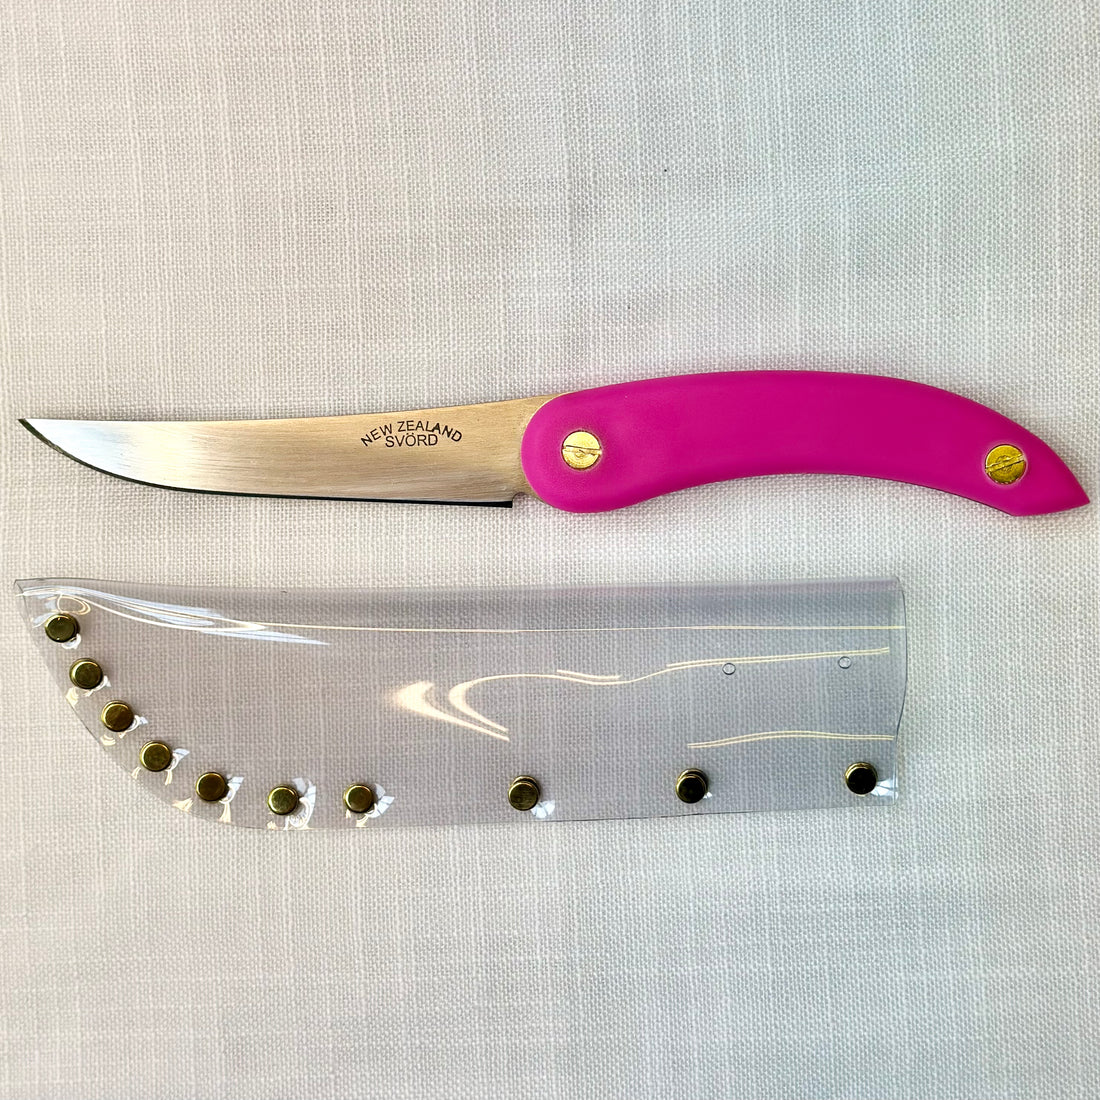 Svord Knives - Kiwi Utility Knife, Pink